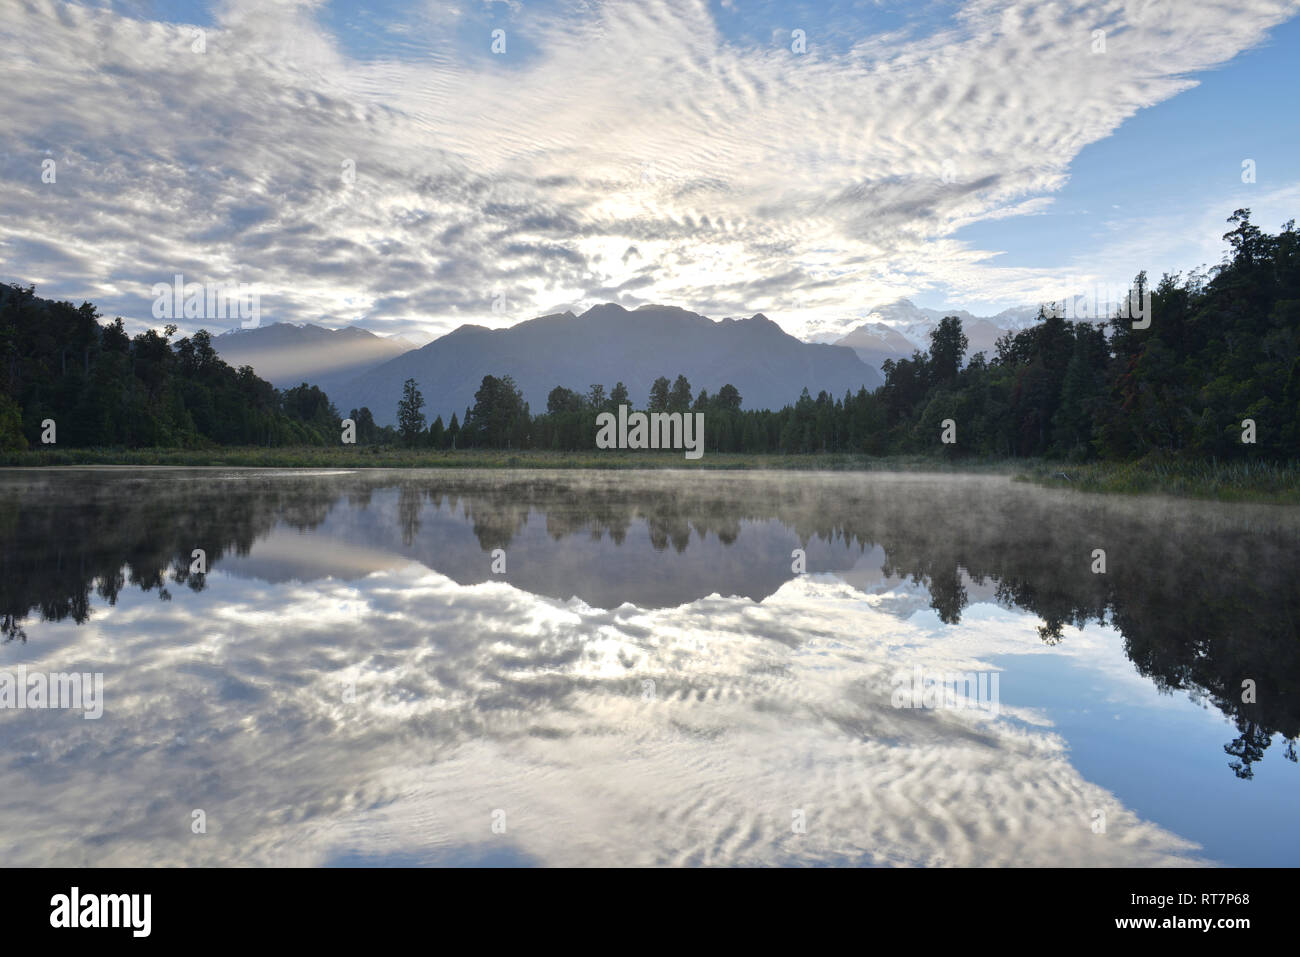 Reflet de Mt Cook (Aoraki) et Mt Tasman, sur le lac Matheson, New Zealand Banque D'Images